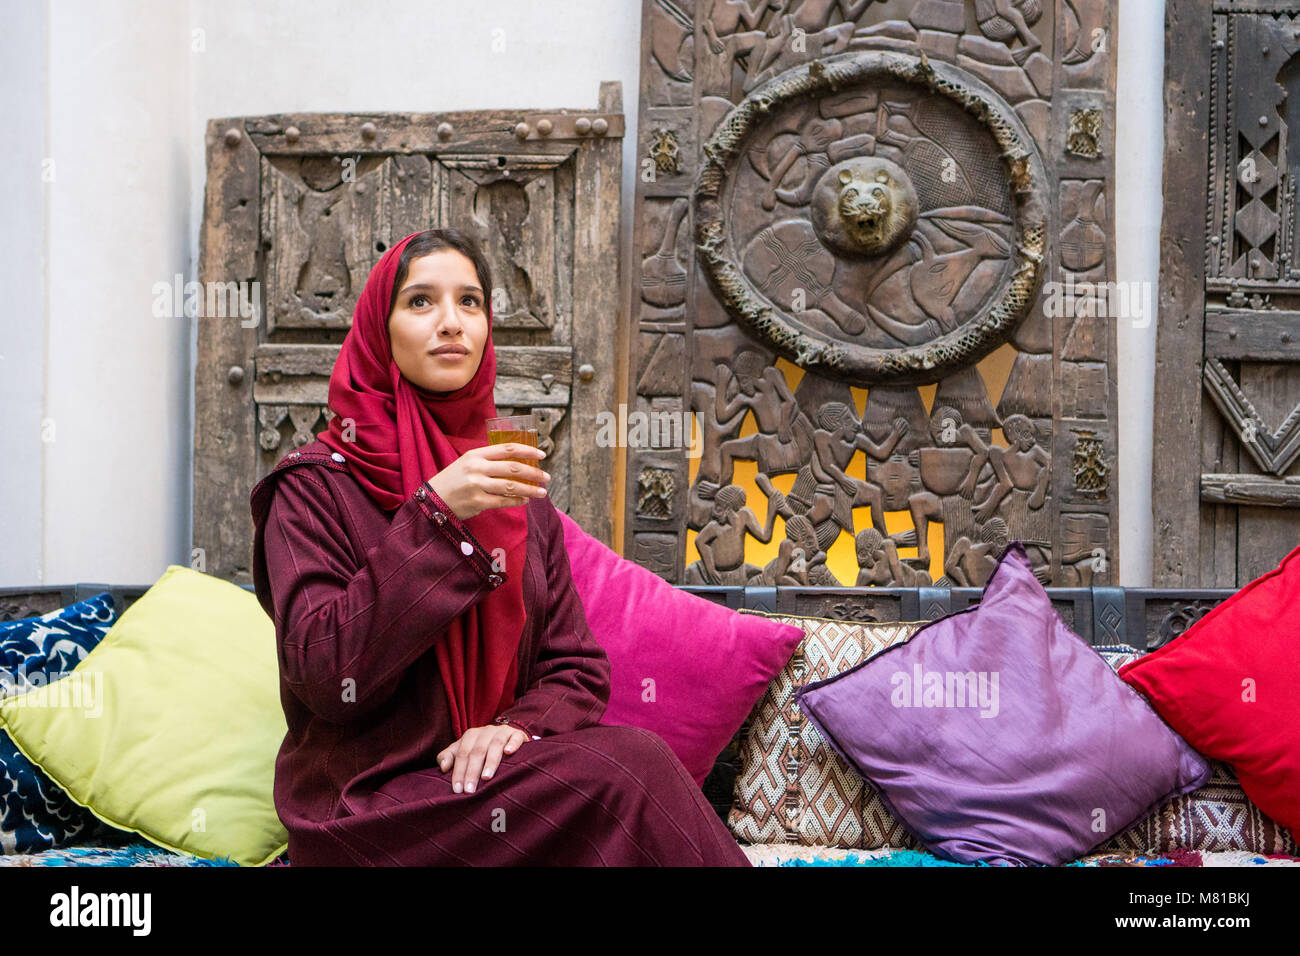 Mujer musulmana, beber un té en el tradicional vestido rojo con pañuelo en la cabeza en el tradicional ambiente de oriente medio Foto de stock